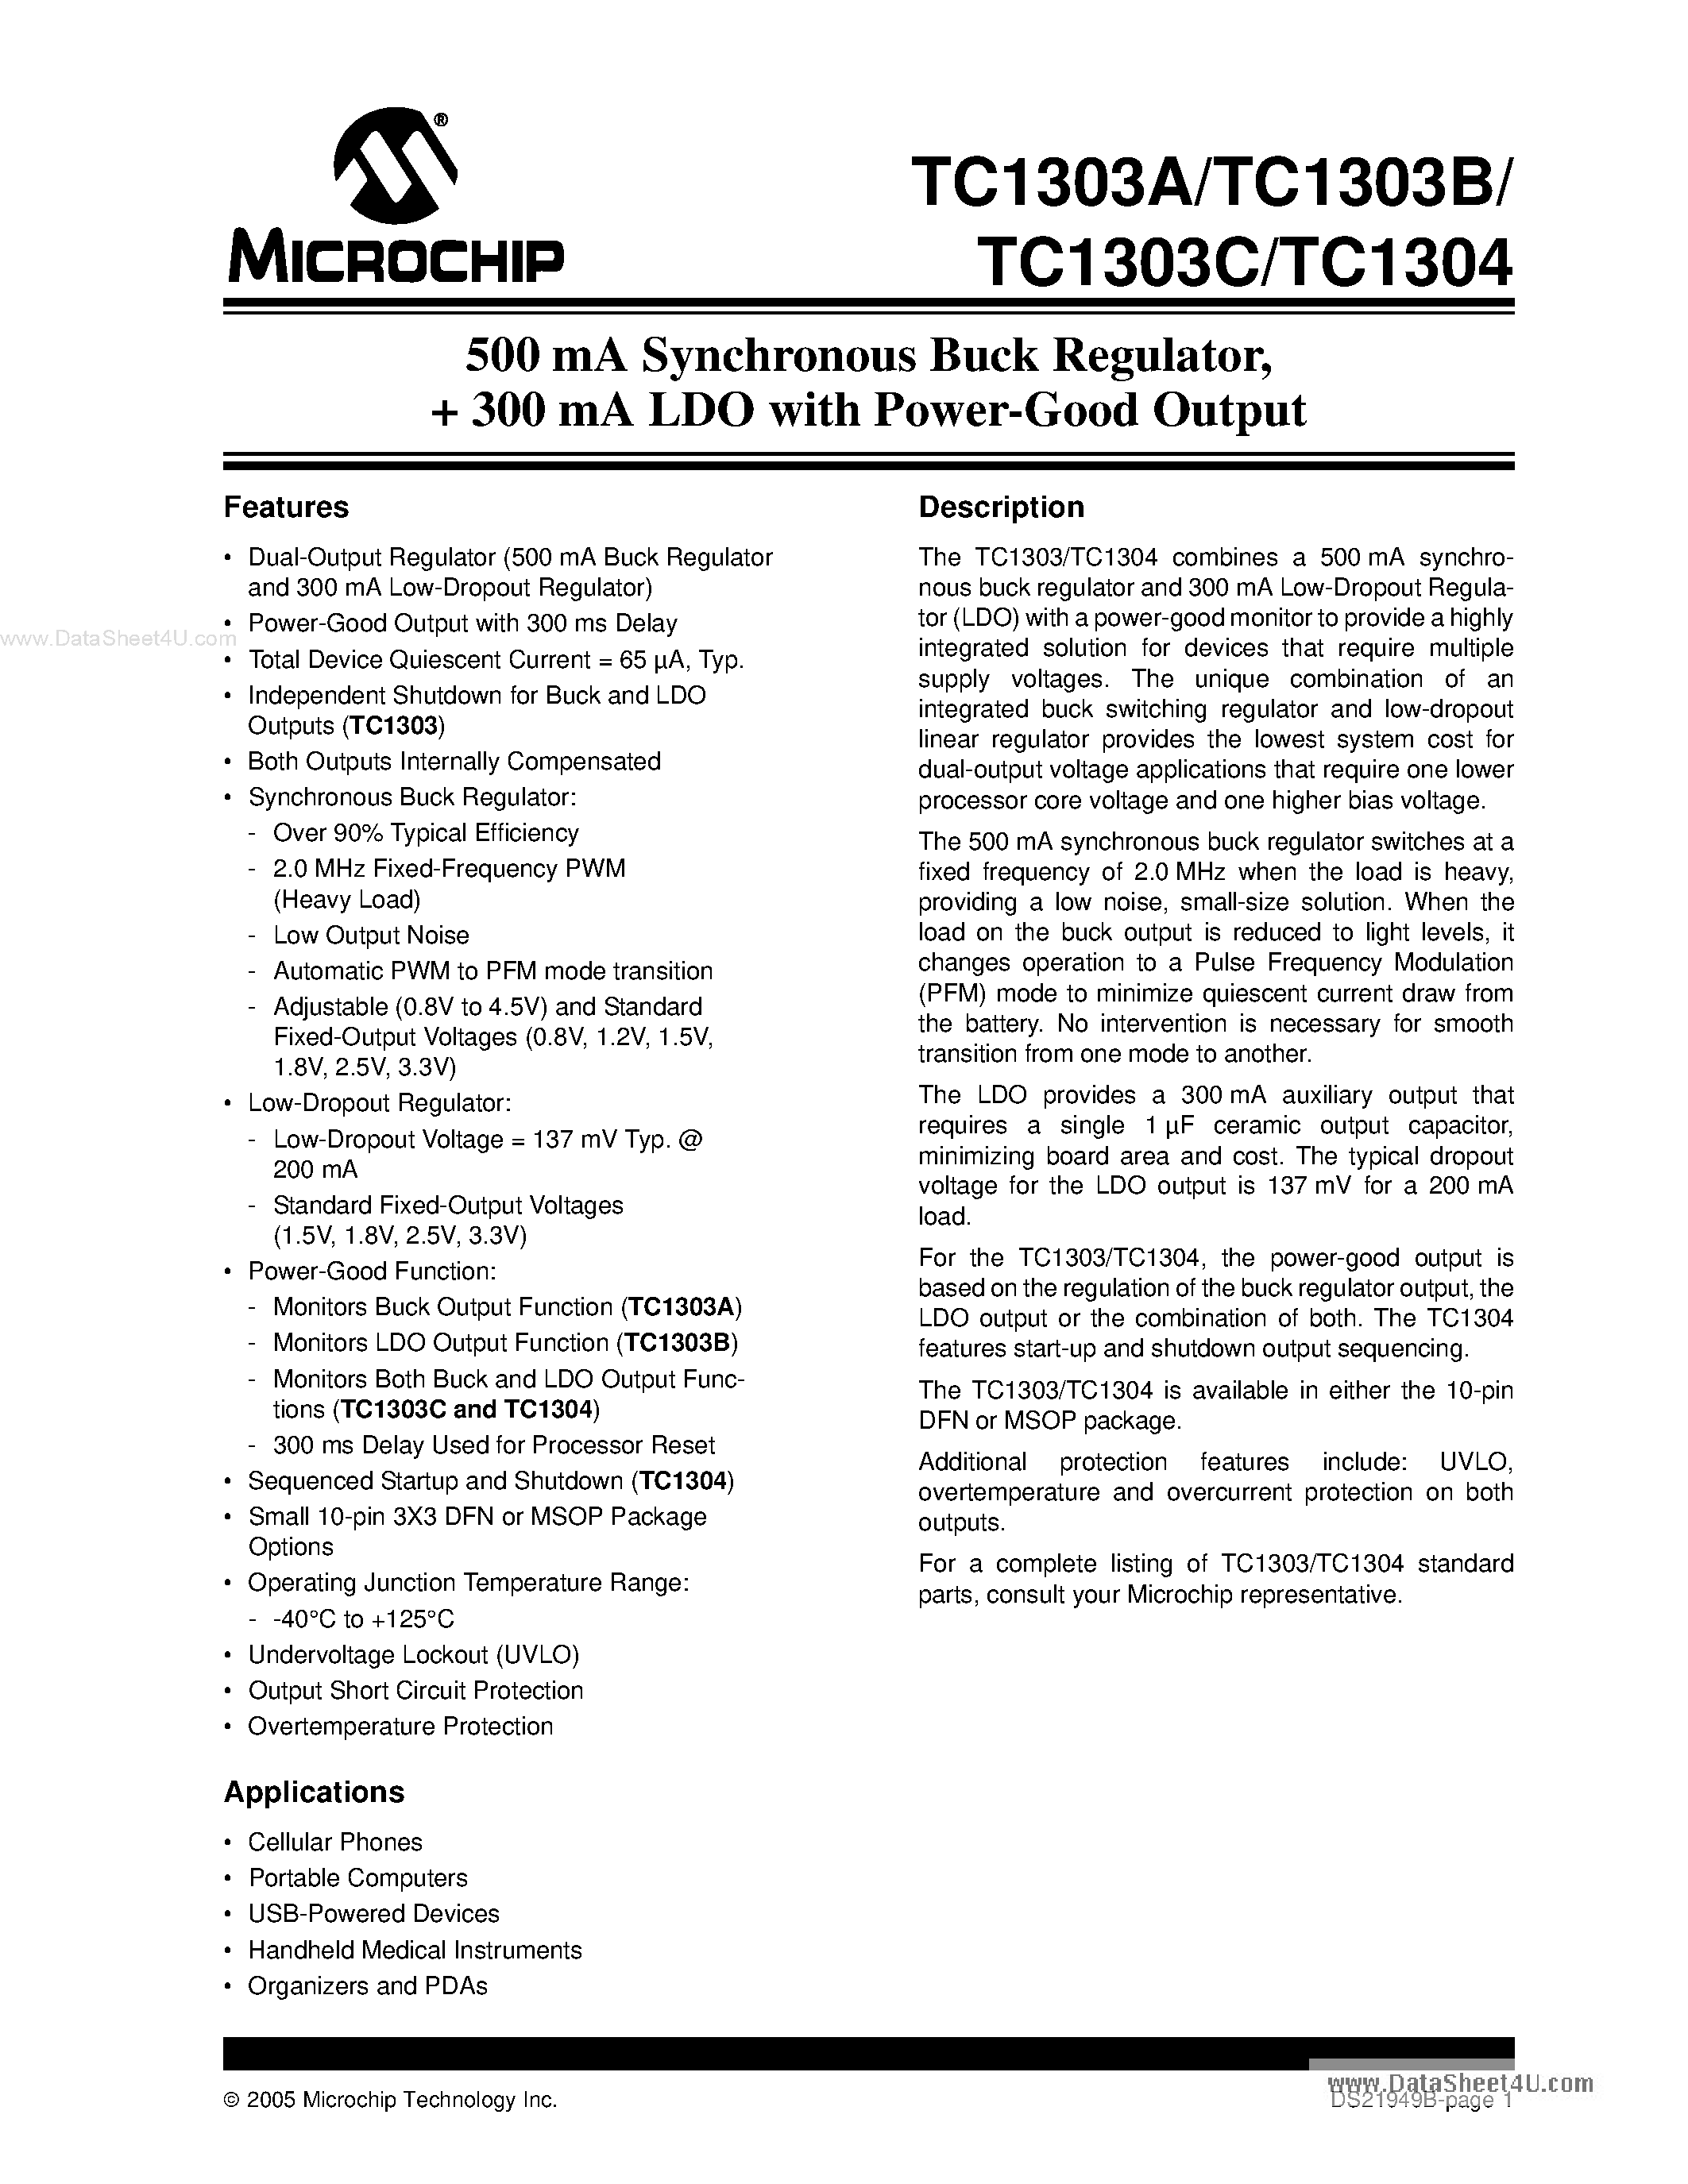 Datasheet TC1303A - (TC1303 / TC1304) 500 mA Synchronous Buck Regulator page 1